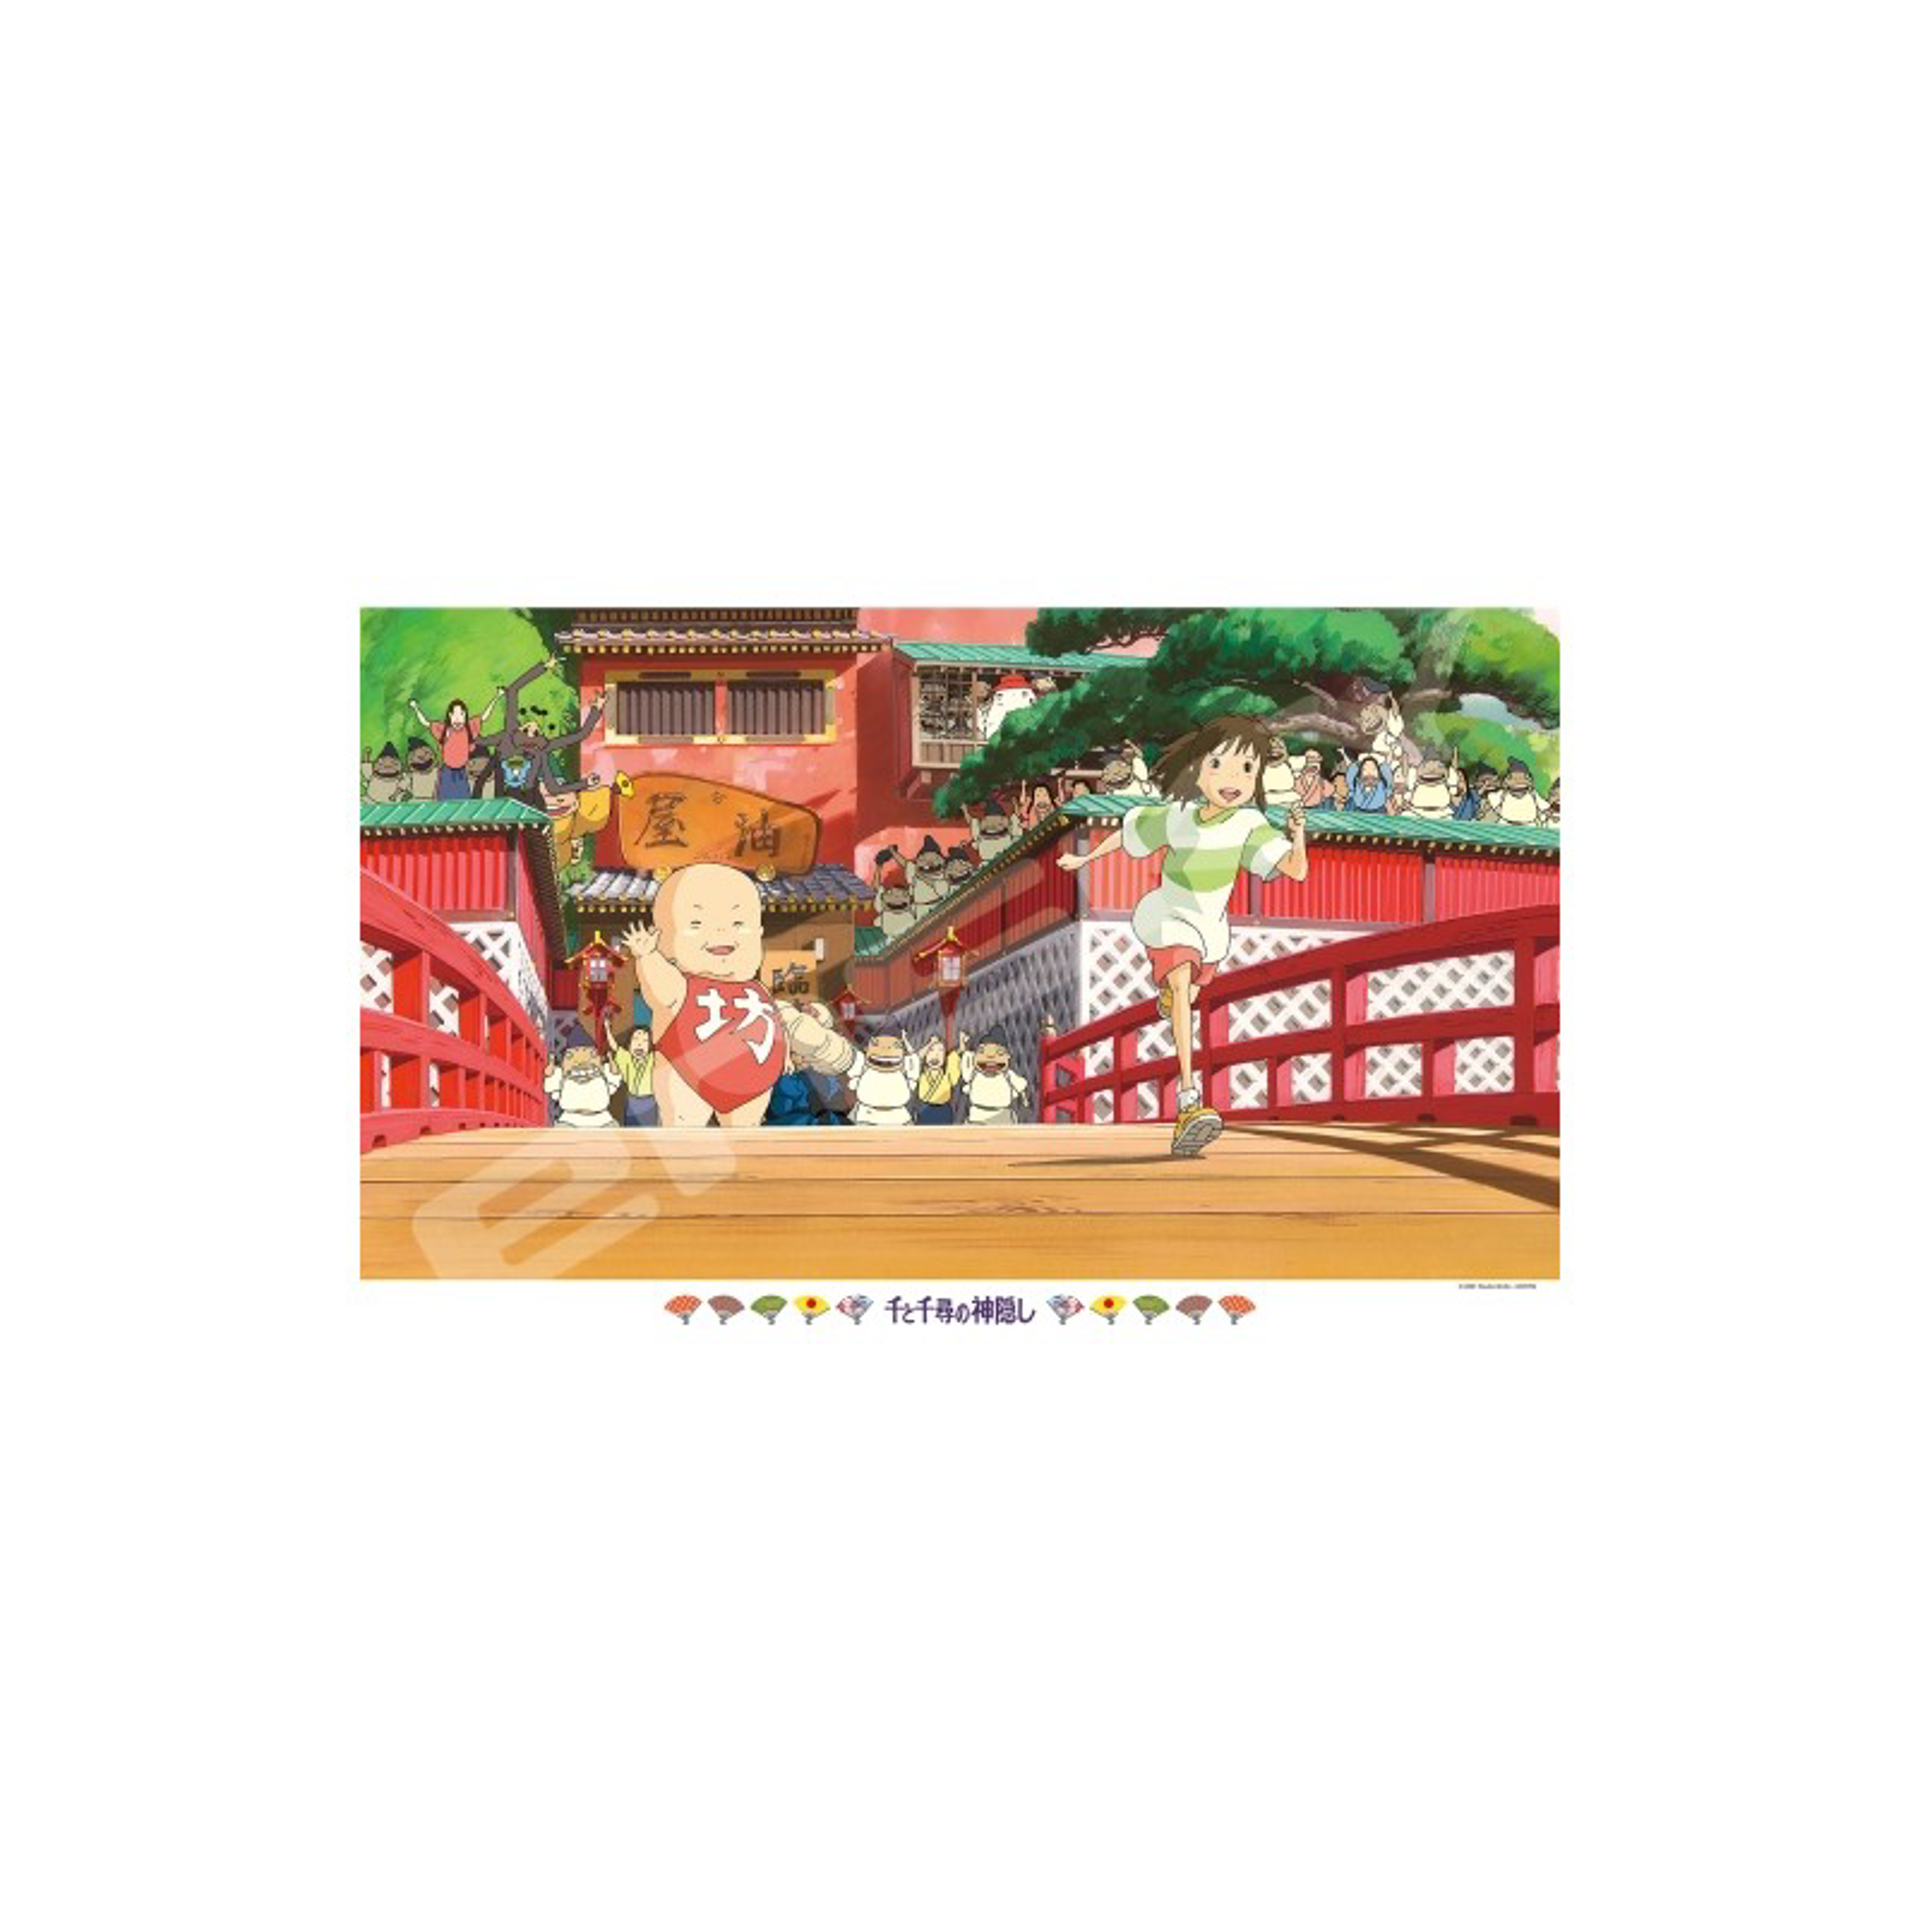 Ghibli - Le voyage de Chihiro - Puzzle Cours Chihiro ! 1000pcs